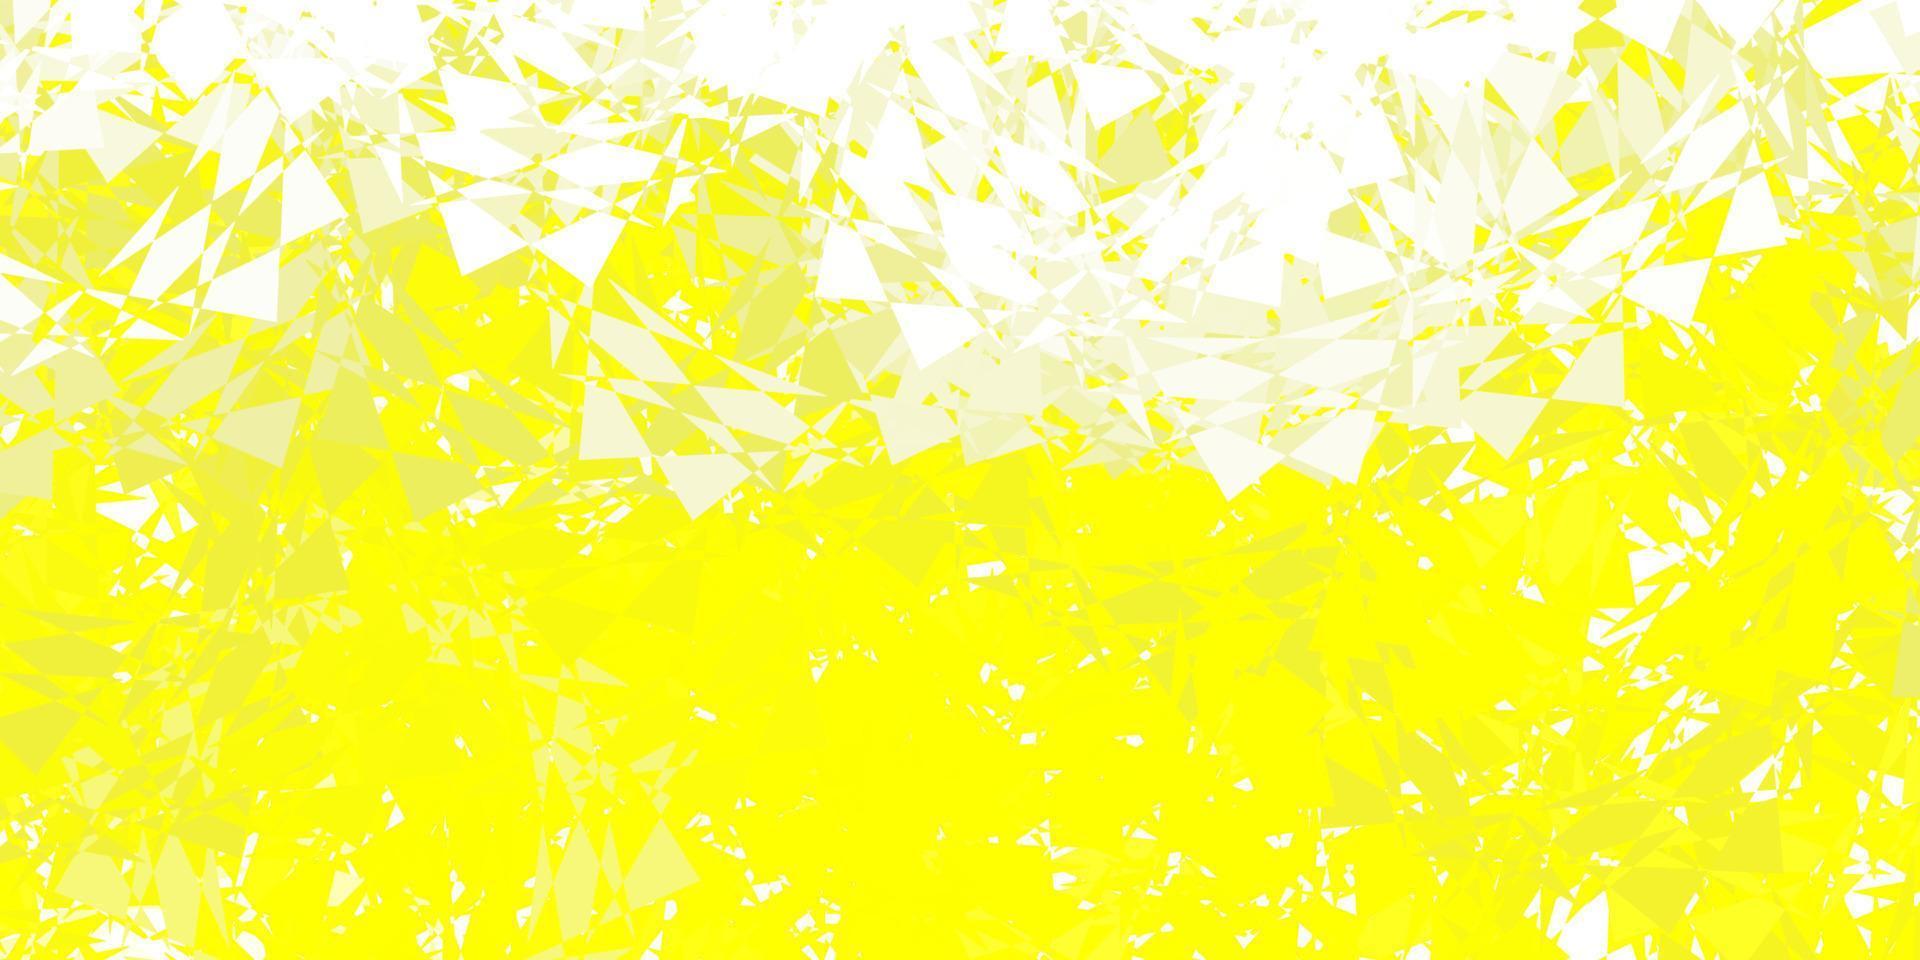 sfondo vettoriale giallo chiaro con forme poligonali.